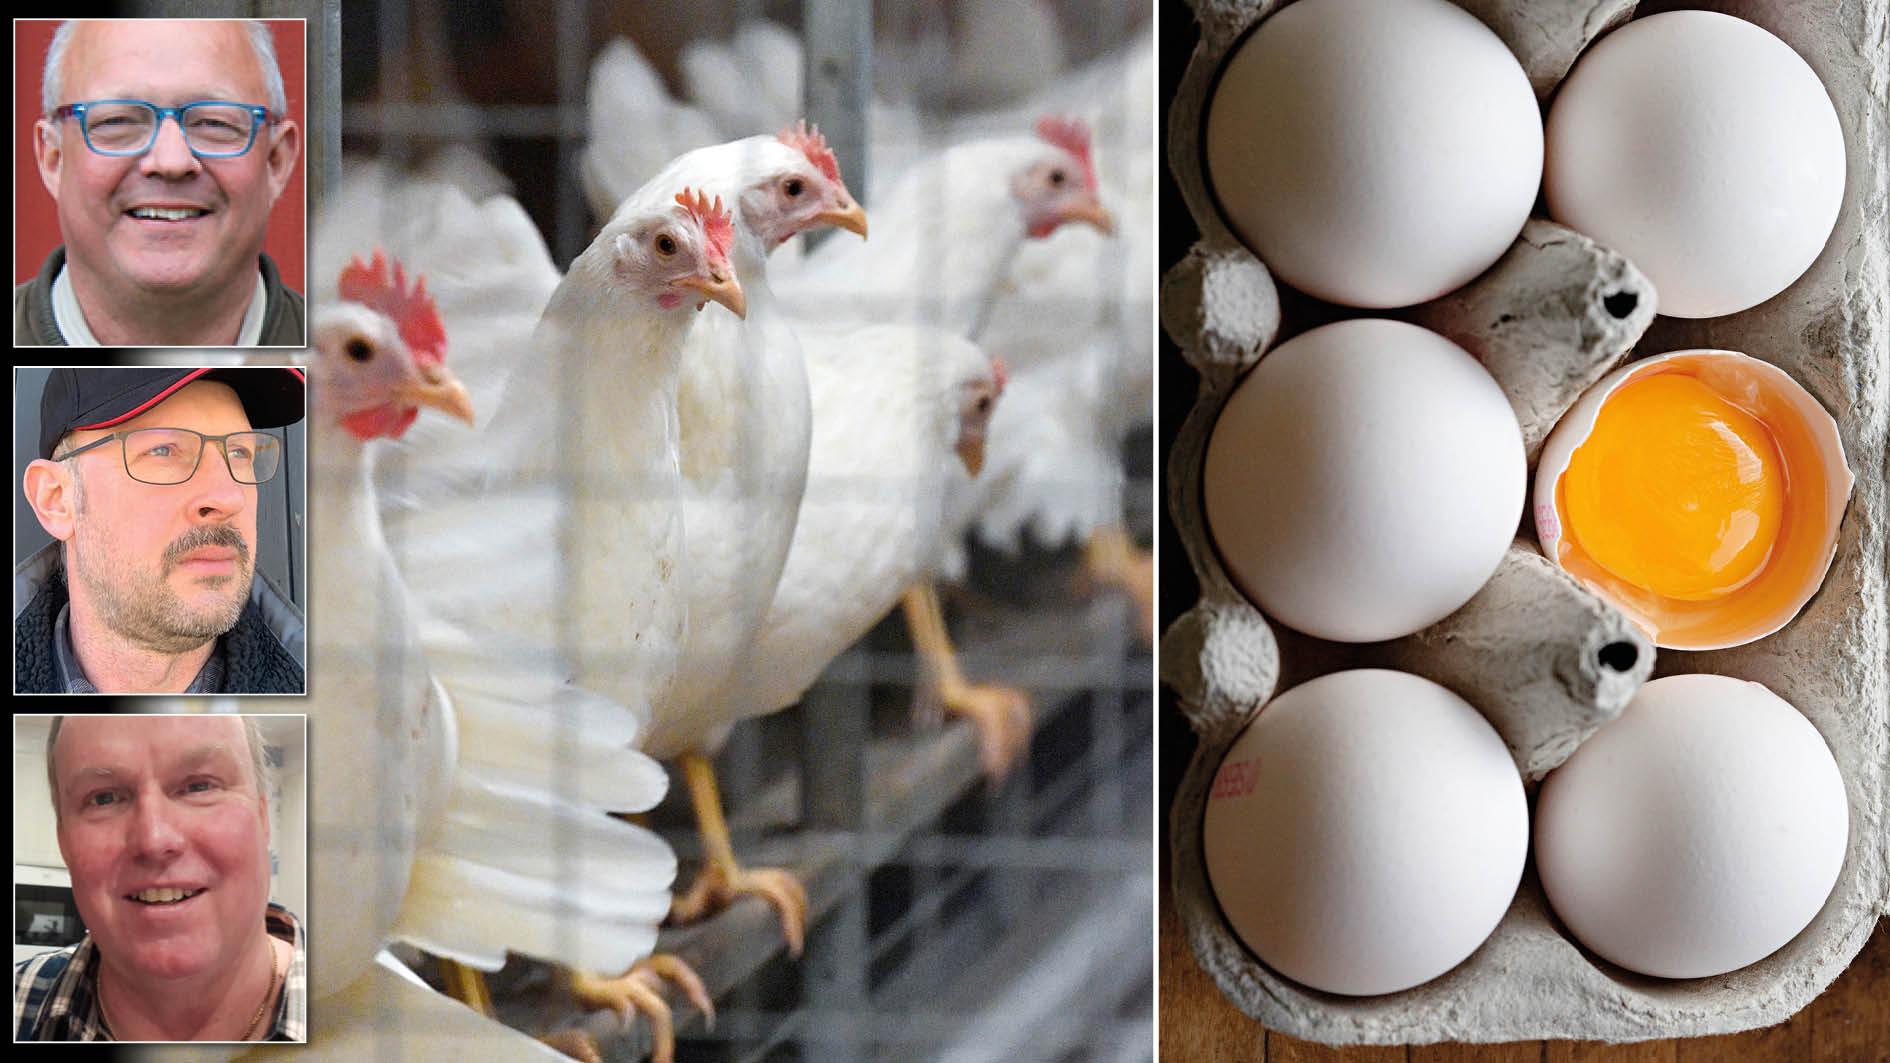 Den här gången är det salmonella, förra gången var det fågelinfluensa. Med stöttning av skattepengar, myndigheter och försäkringsbolag har Sveriges största äggproducent tillåtits växa till en ohållbar högriskanläggning, skriver tre äggproducenter.